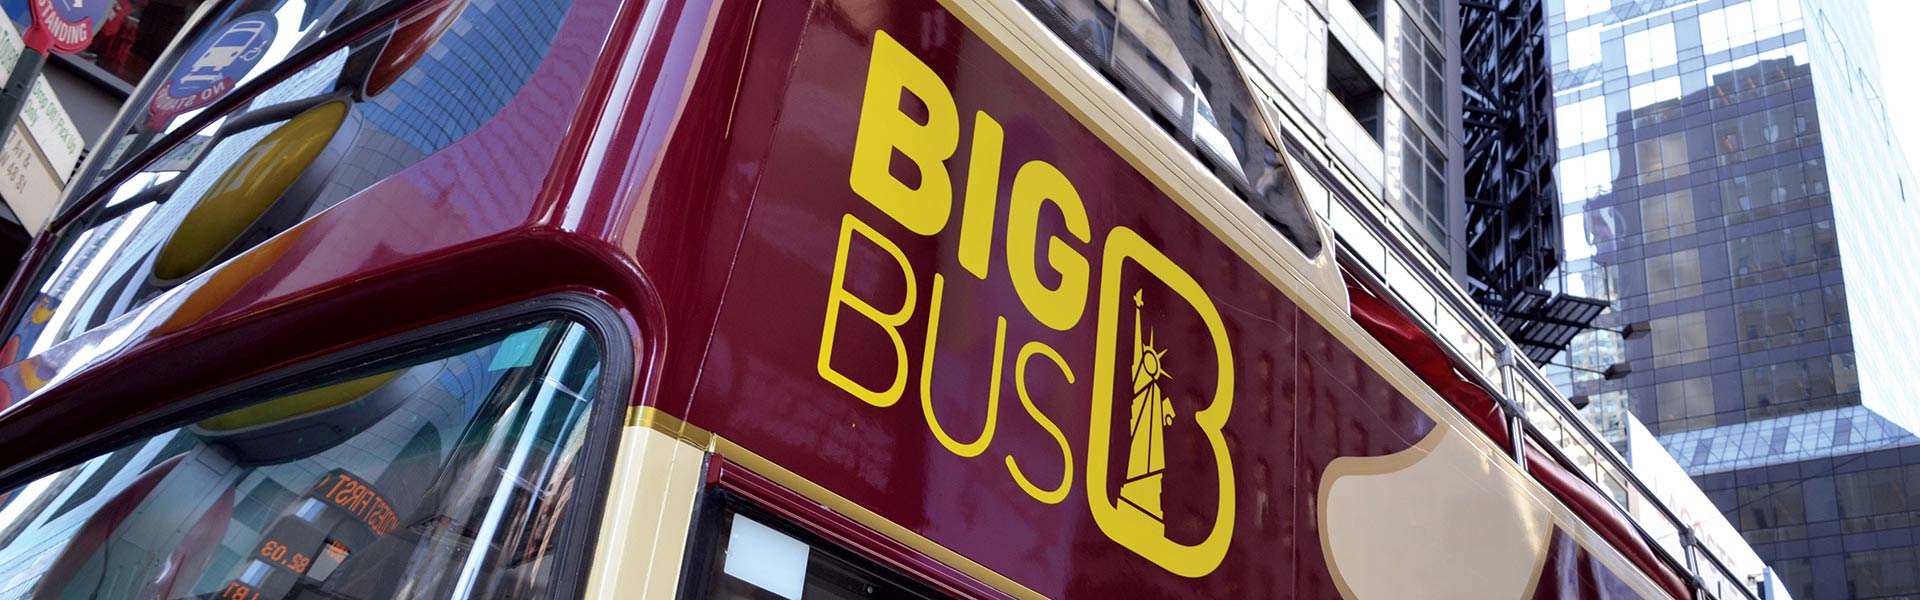 Big Bus Open-Top-Tour von New York